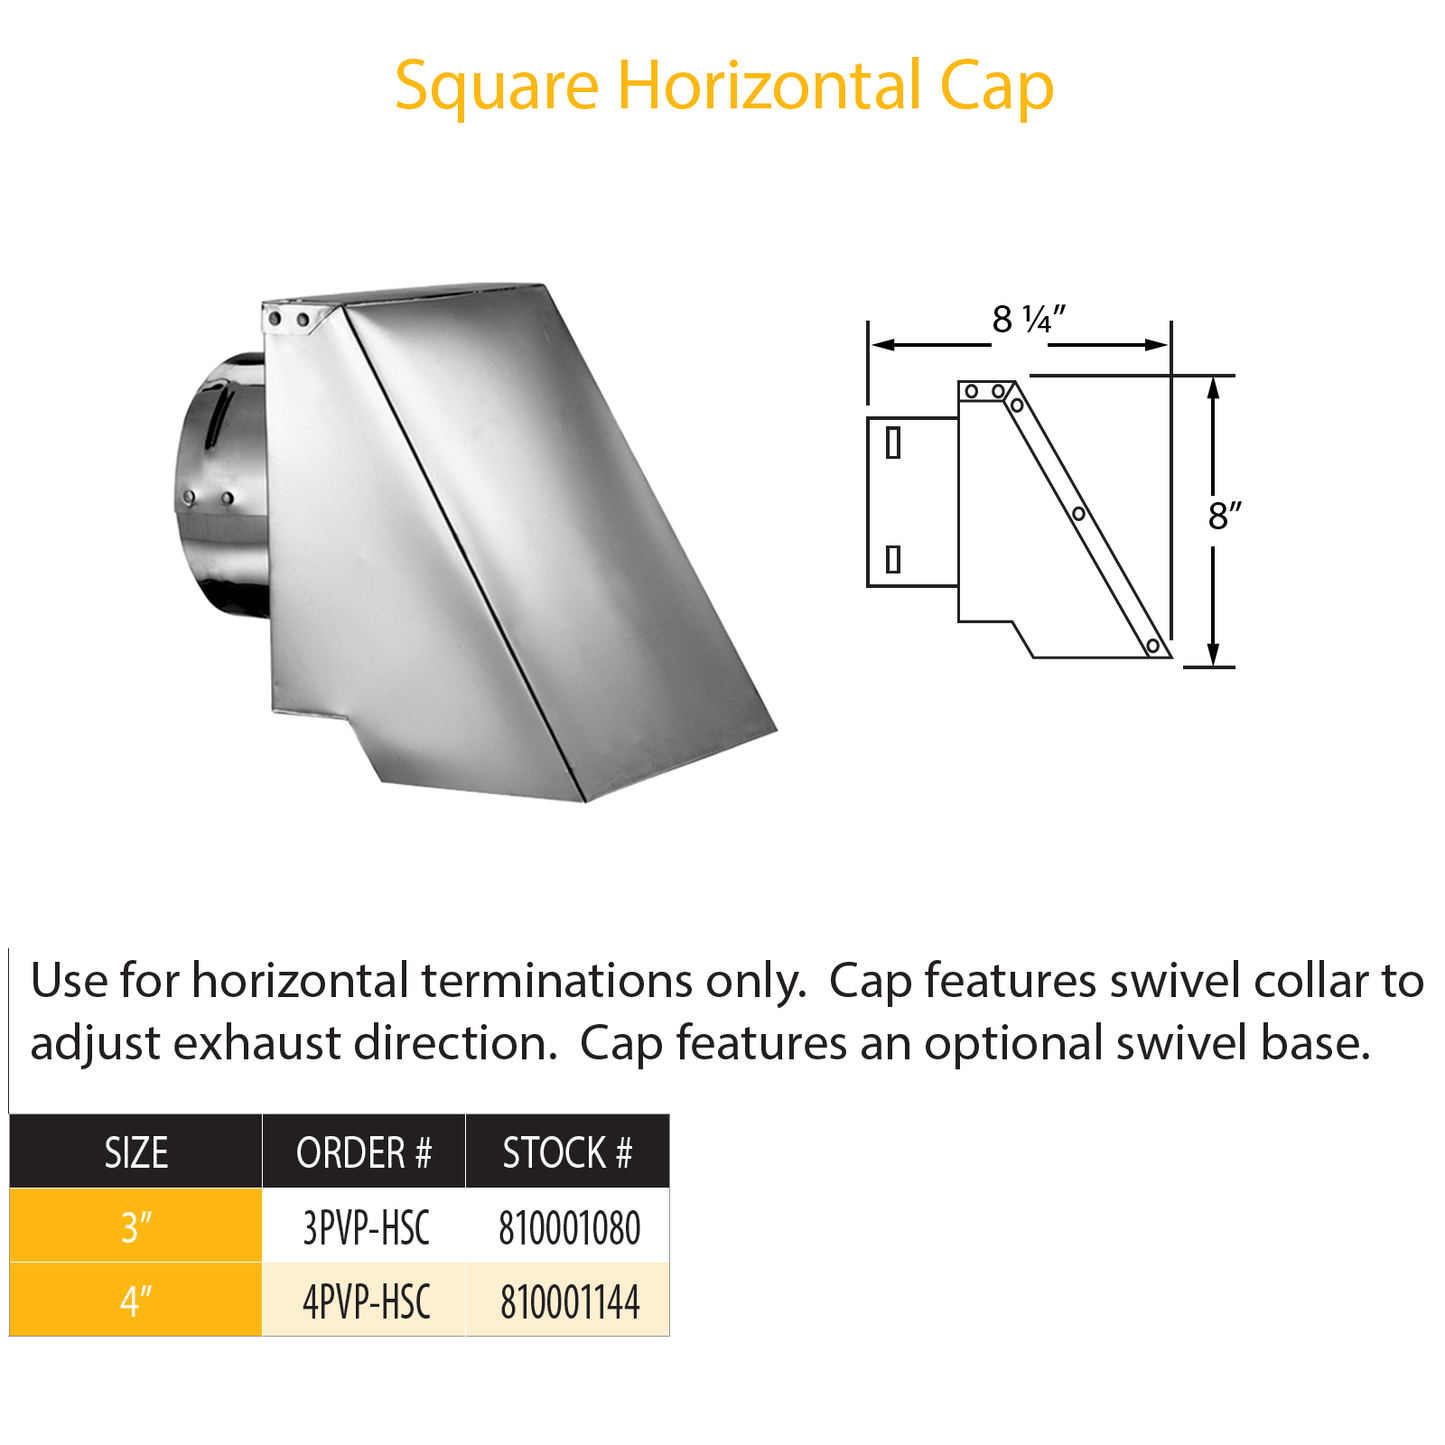 DuraVent Pellet Vent Pro Square Horizontal Cap | 3PVP-HSC